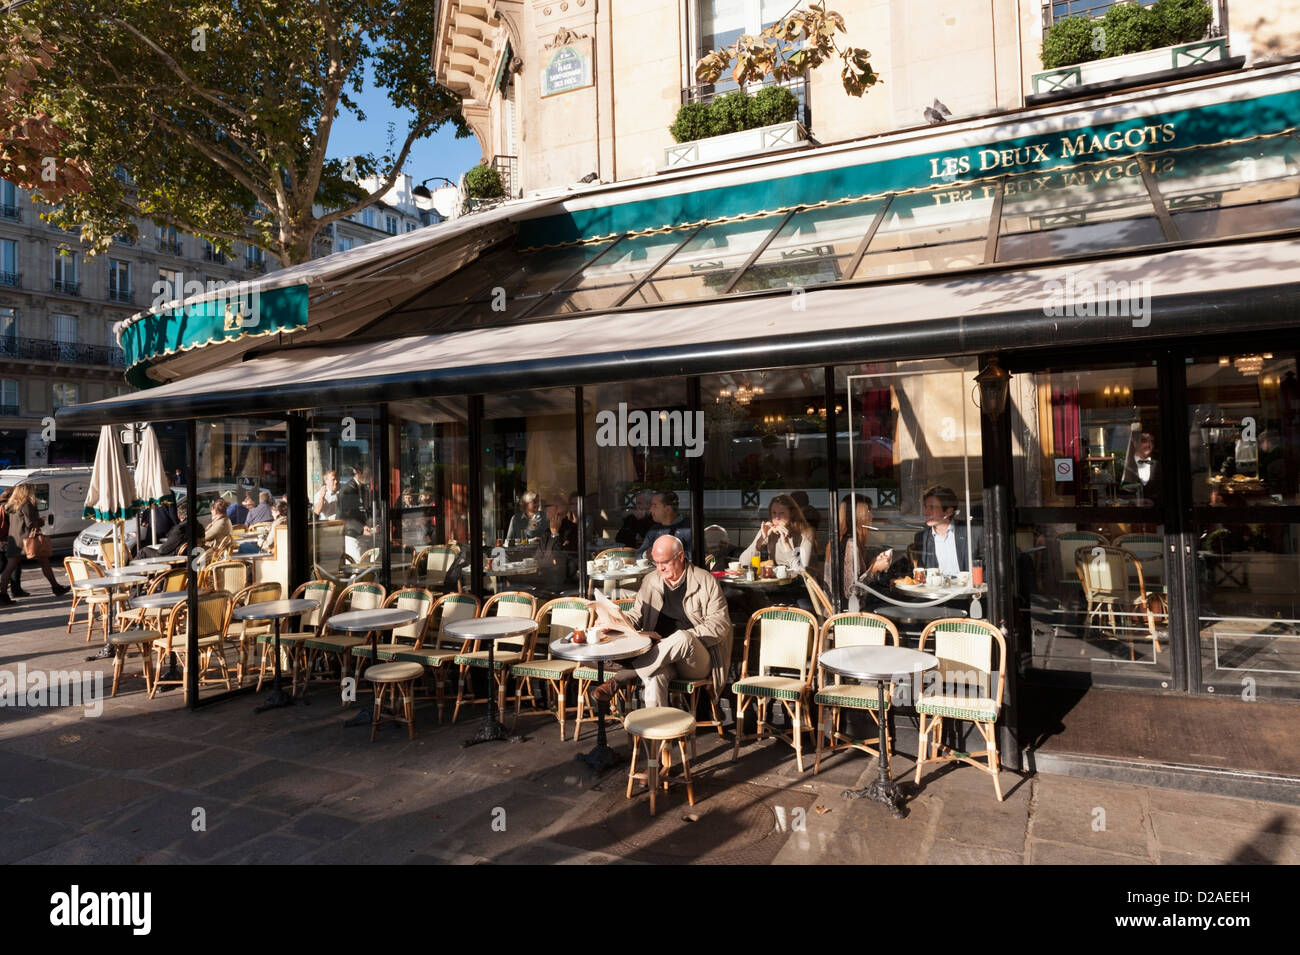 Los clientes en una soleada mañana de otoño en el famoso café parisino Les Deux Magots en Saint-Germain-des-Prés. Foto de stock